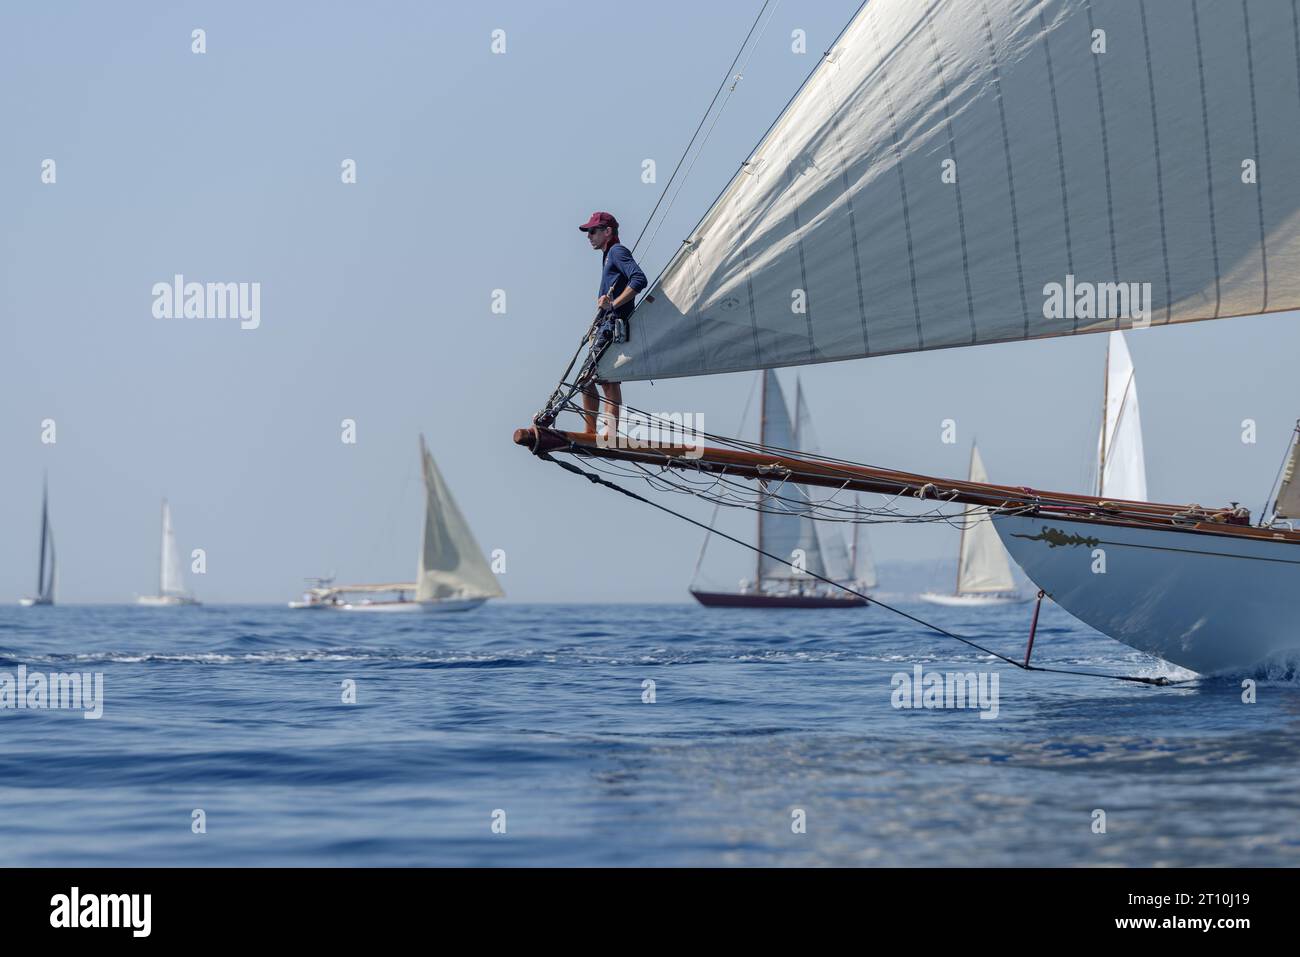 Membro dell'equipaggio a bordo di una barca a vela durante la regata nel Golfo di Imperia, Italia Foto Stock